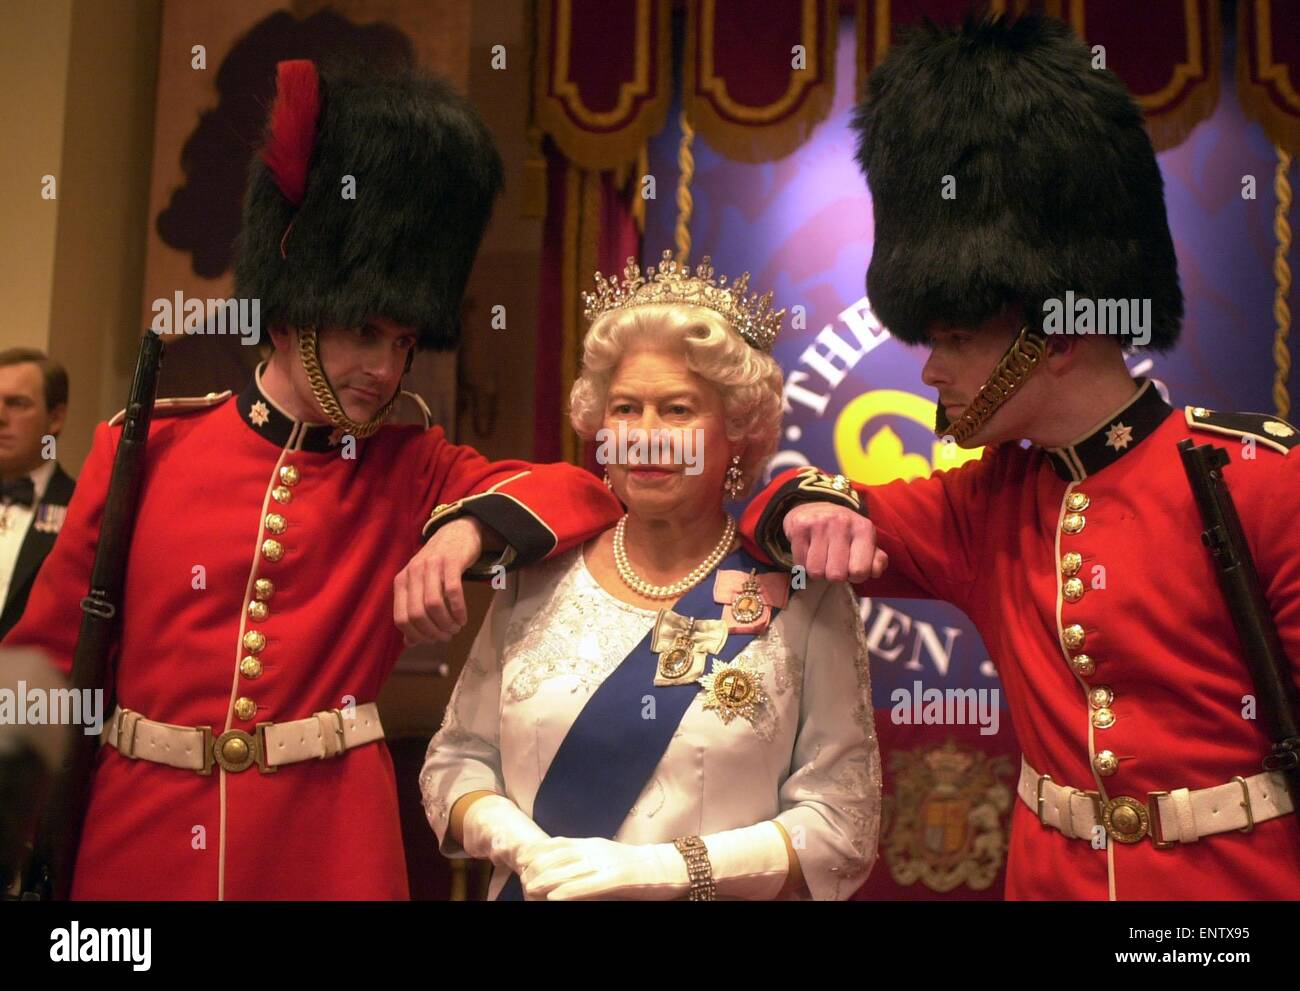 Visitantes en obras de cera Madame Tussauds puede tener sus fotos tomadas con la reina Isabel II la modelo, las cuerdas se han quitado en la marca del Jubileo de Oro. Mayo de 2002 Foto de stock